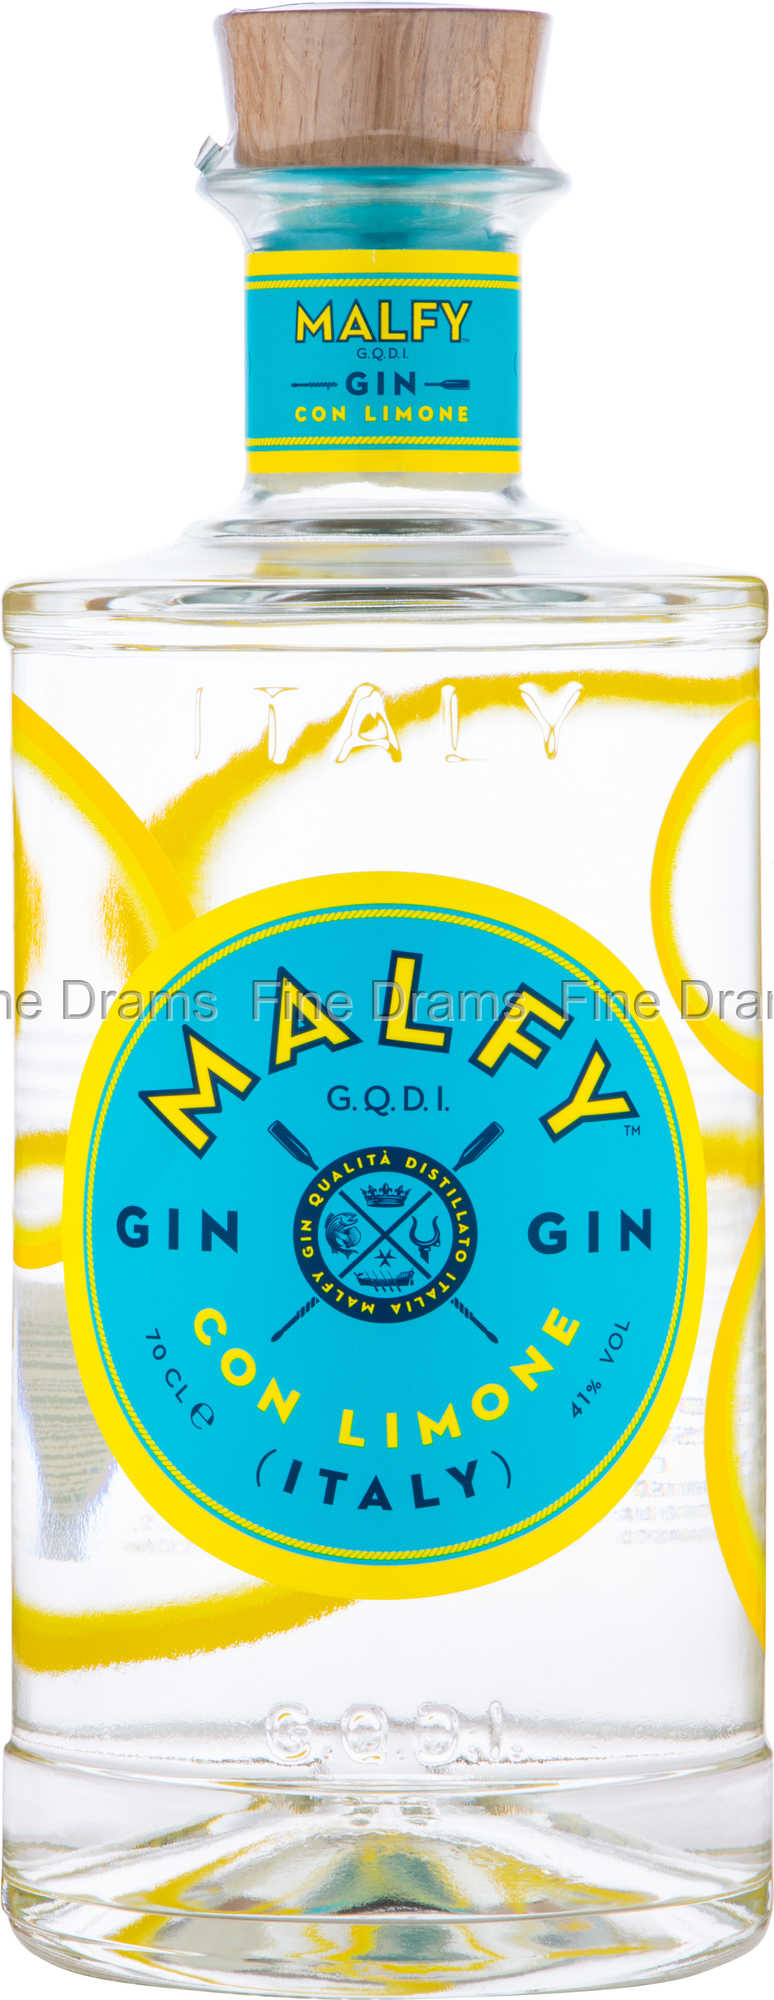 Malfy Limone Drams Gin | Con Fine